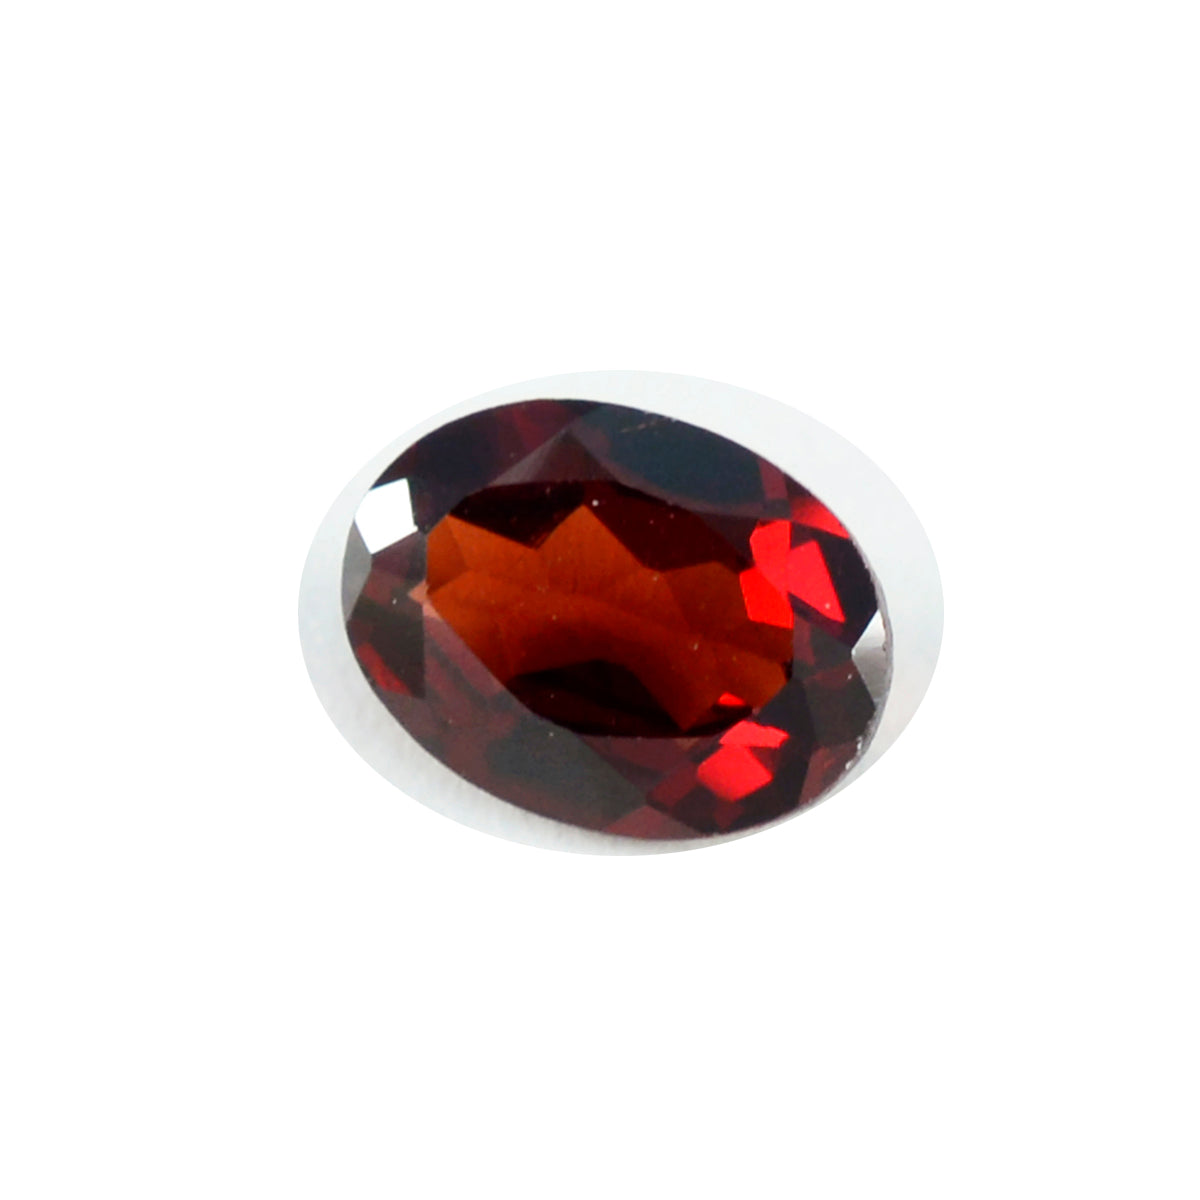 Riyogems 1 Stück echter roter Granat, facettiert, 12 x 16 mm, ovale Form, gut aussehender Qualitäts-Edelstein